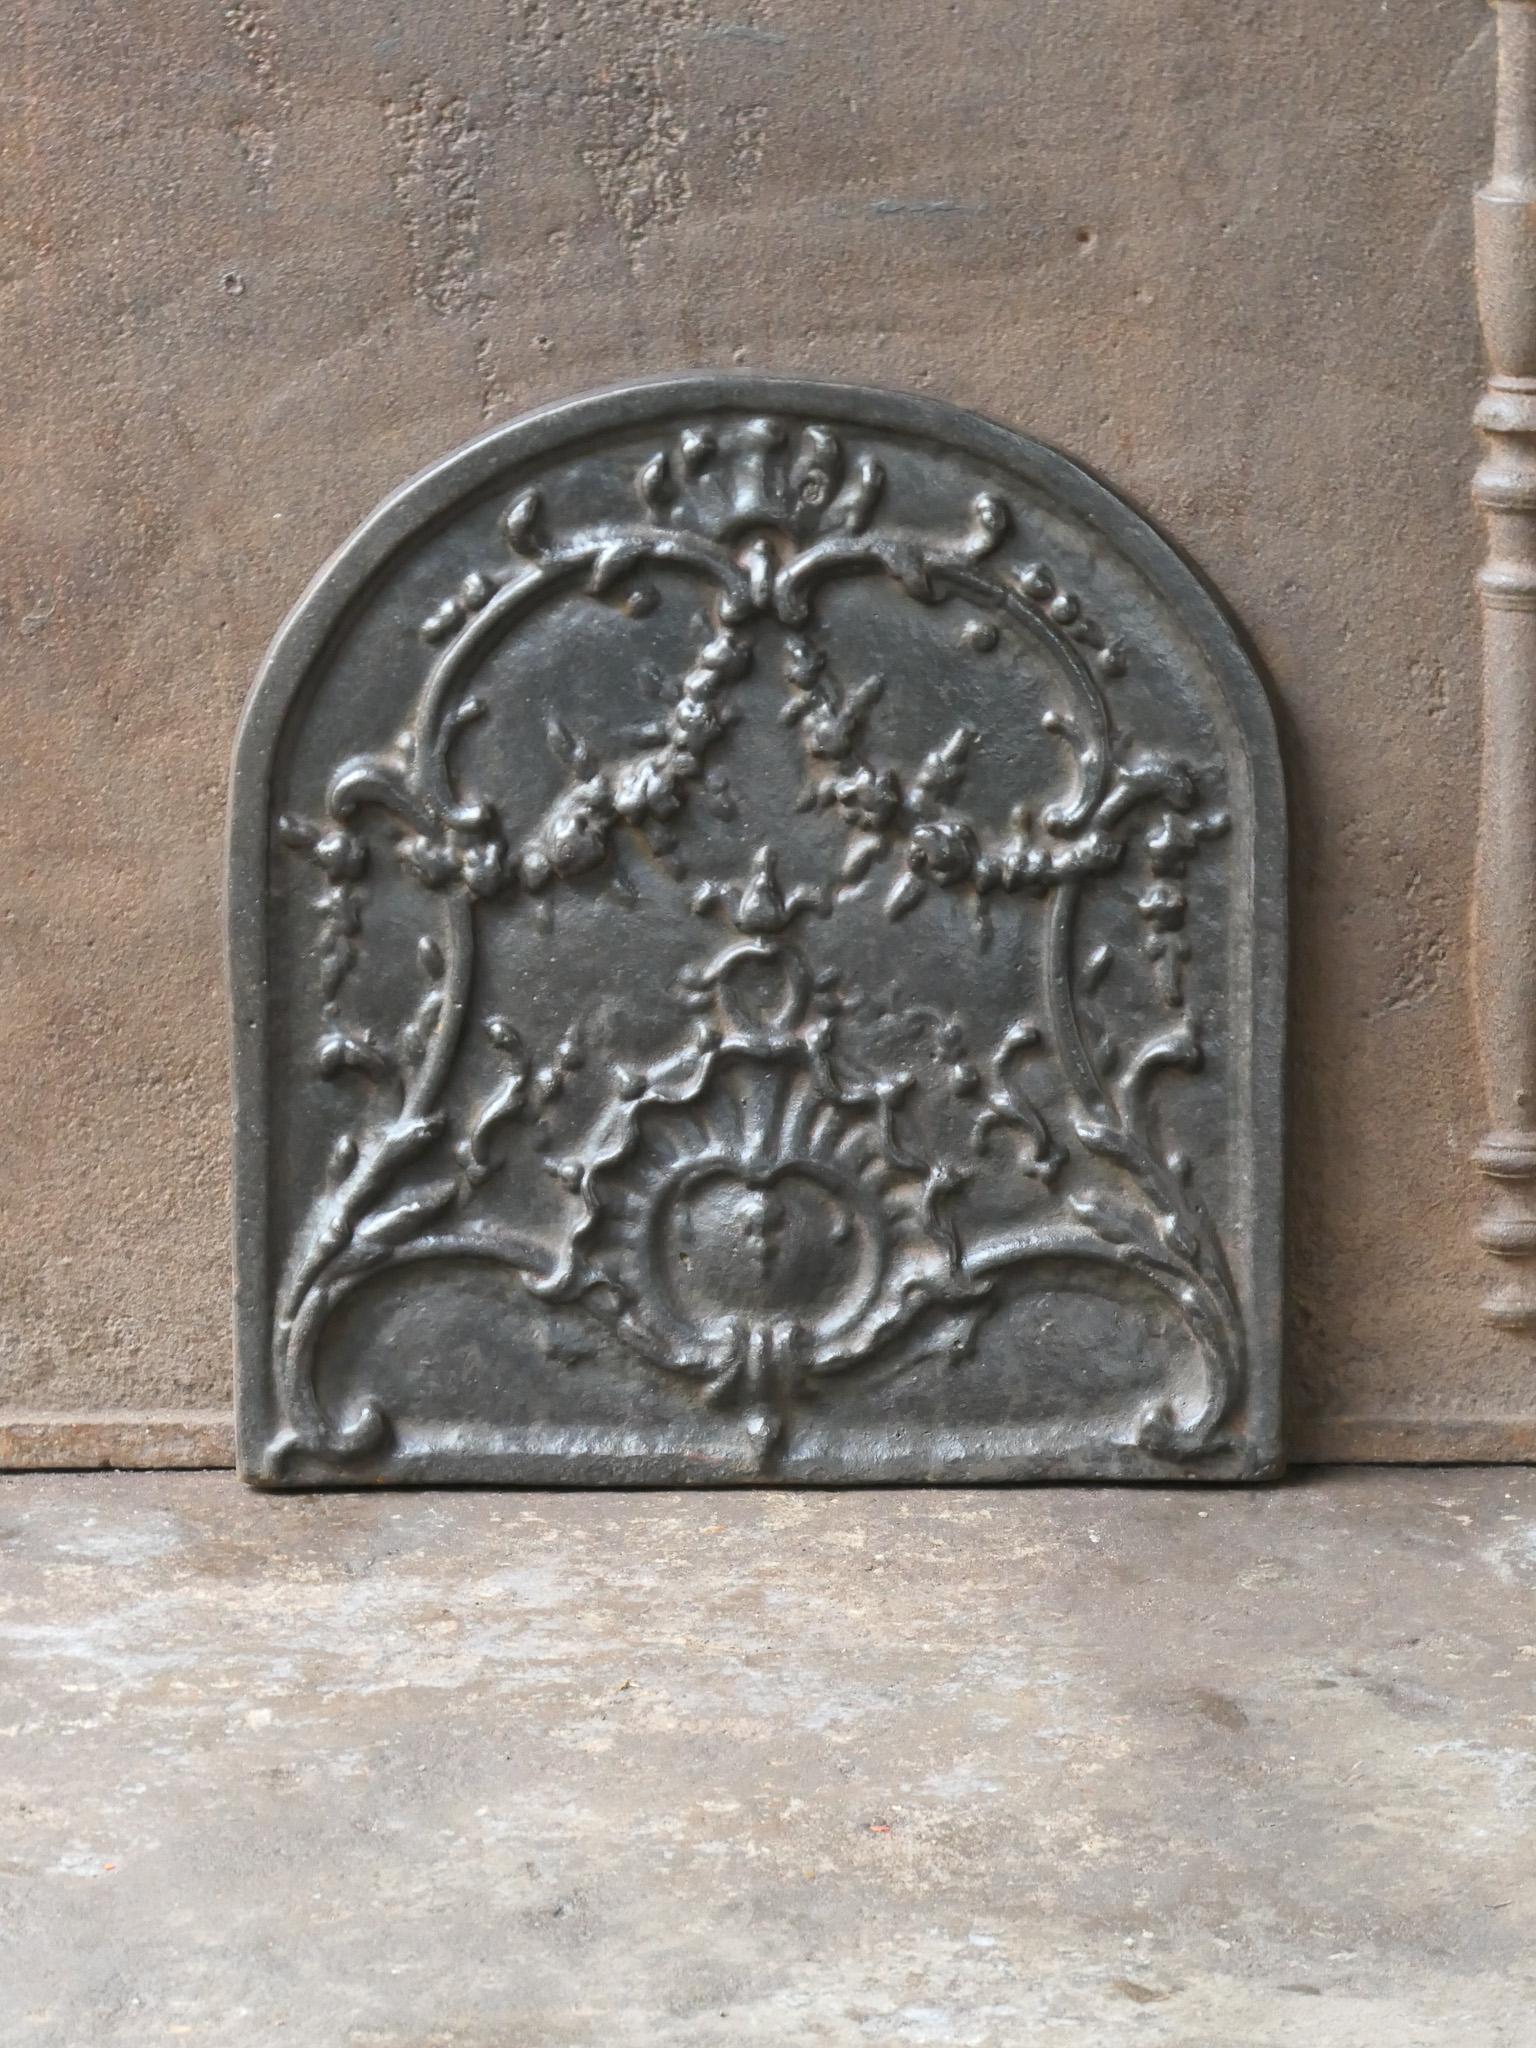 Französischer Kamin im Louis-XV-Stil des 20. Jahrhunderts mit einer typischen Louis-XV-Dekoration.

Die Feuerrückwand ist aus Gusseisen und hat eine natürliche braune Patina. Auf Wunsch kann es ohne Aufpreis schwarz / zinnfarben mit